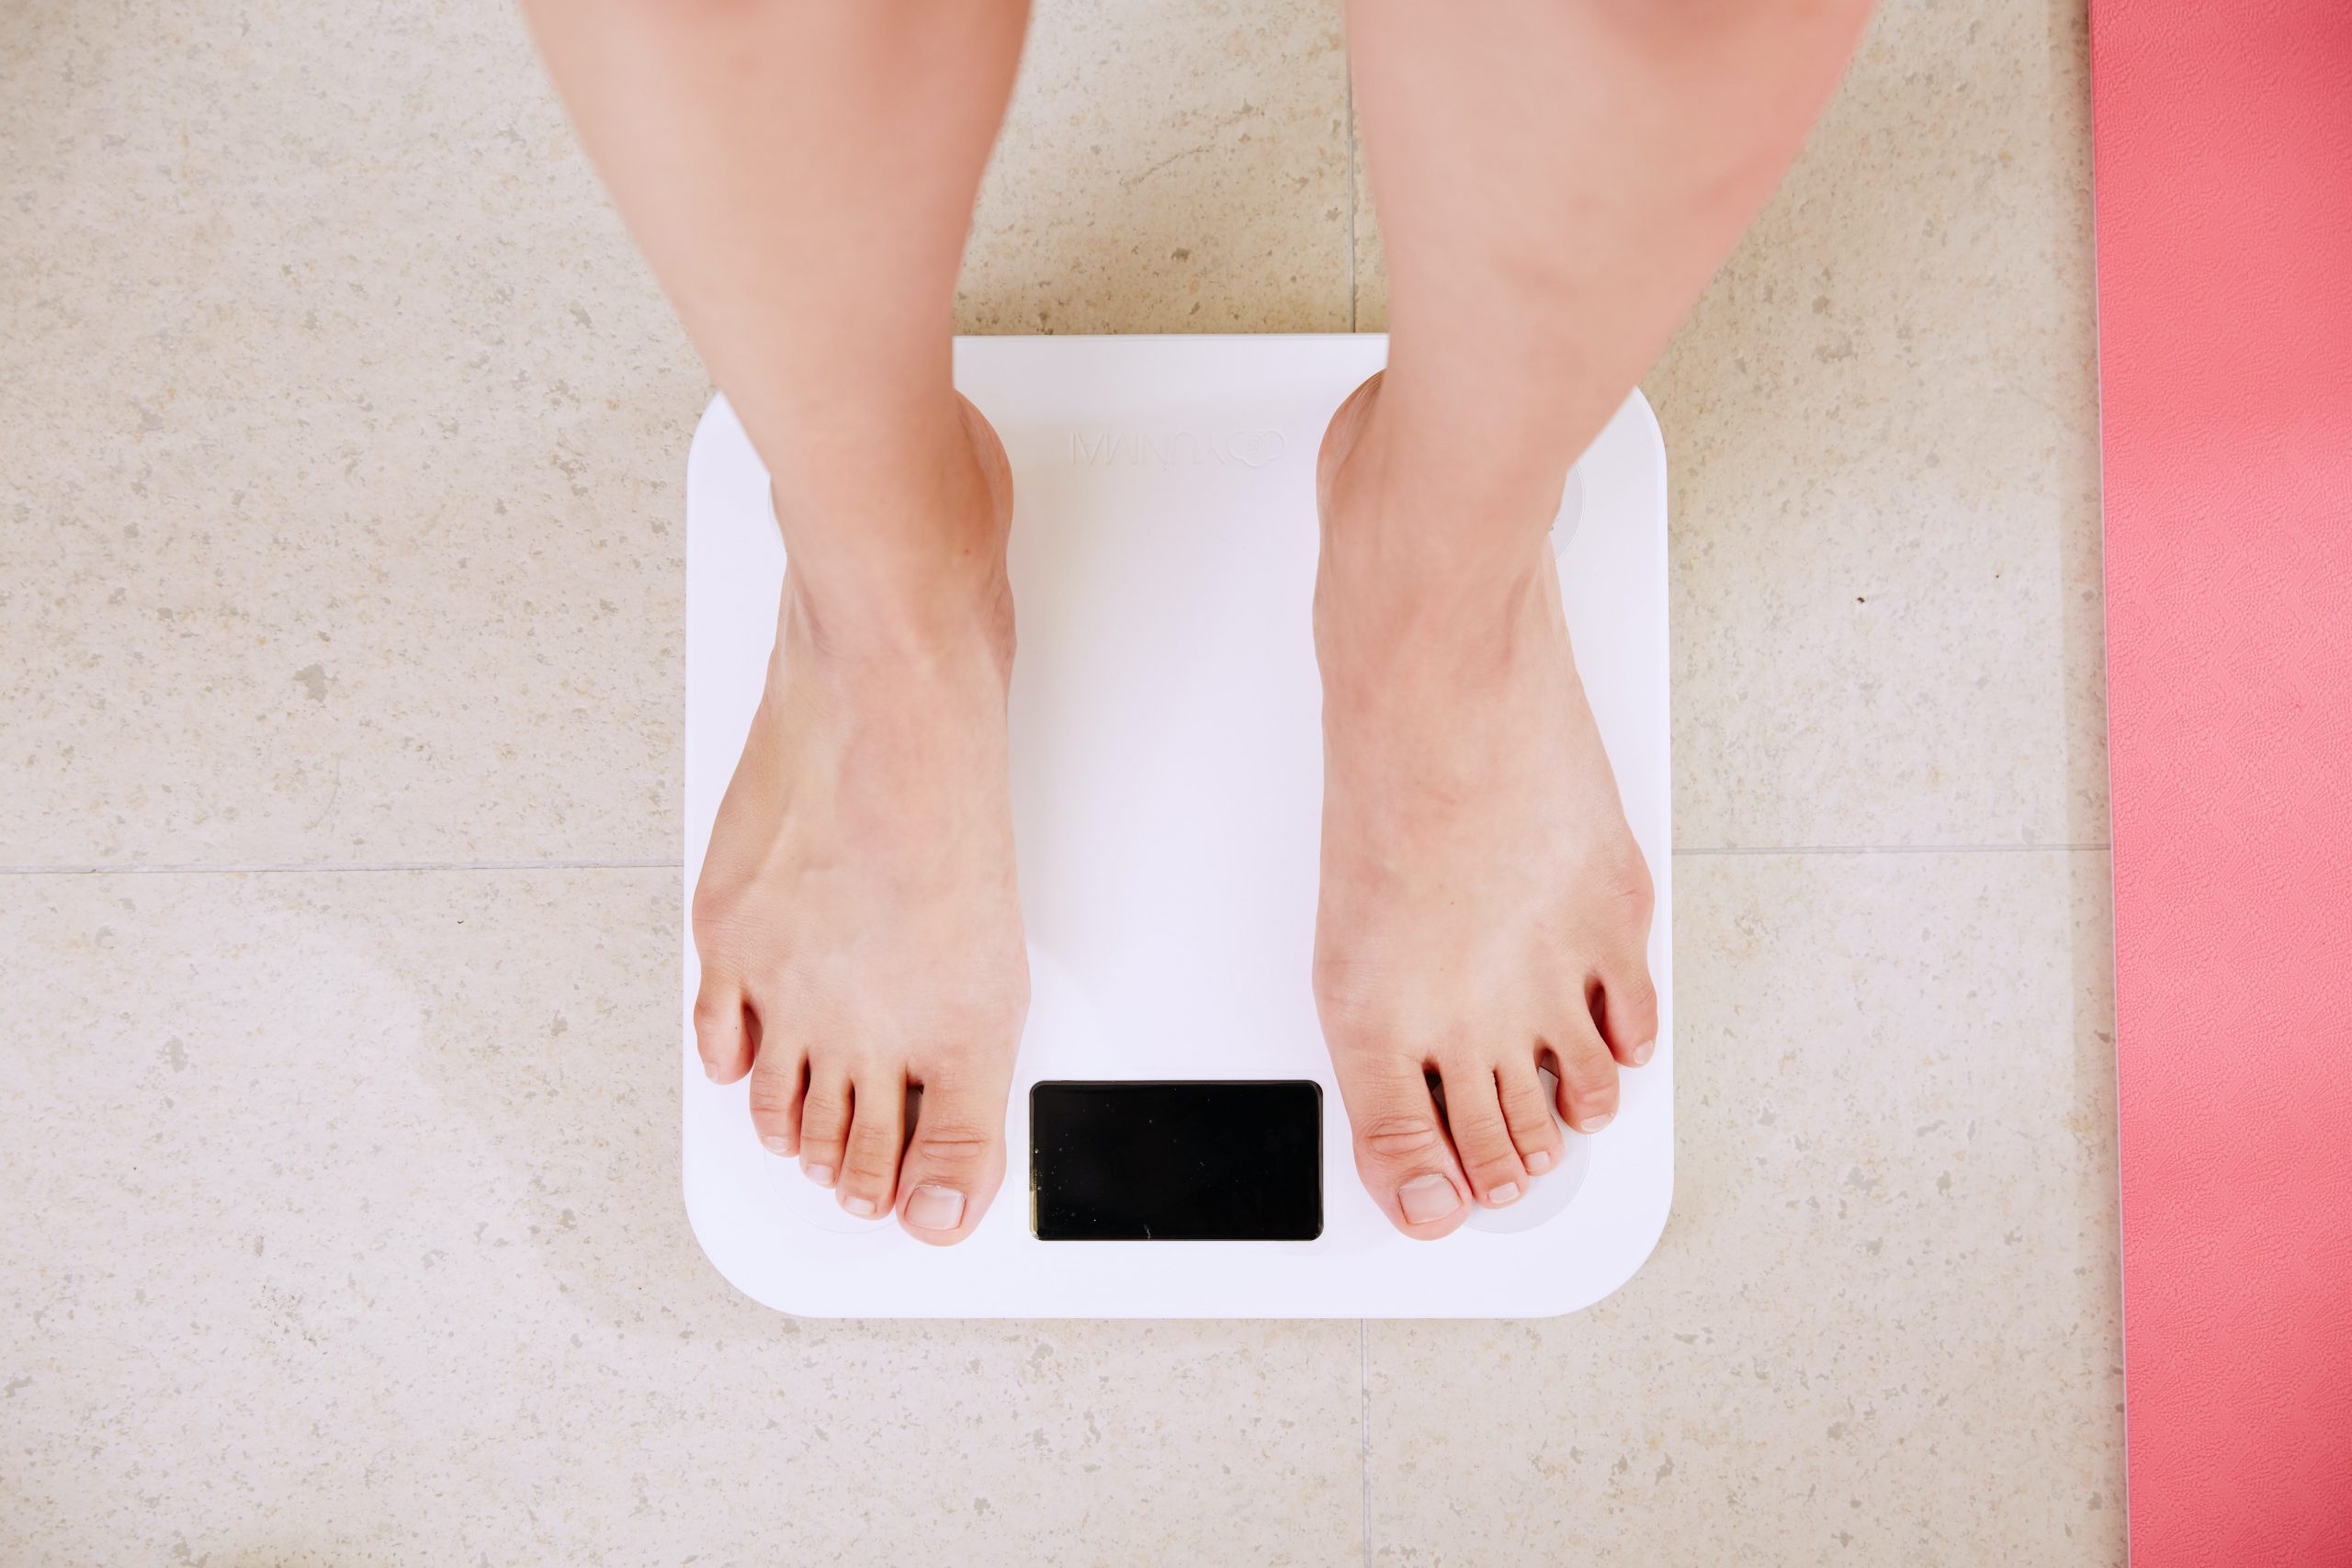 Πώς να χάσω κιλά; 6 διαιτολόγοι μάς δίνουν τις συμβουλές